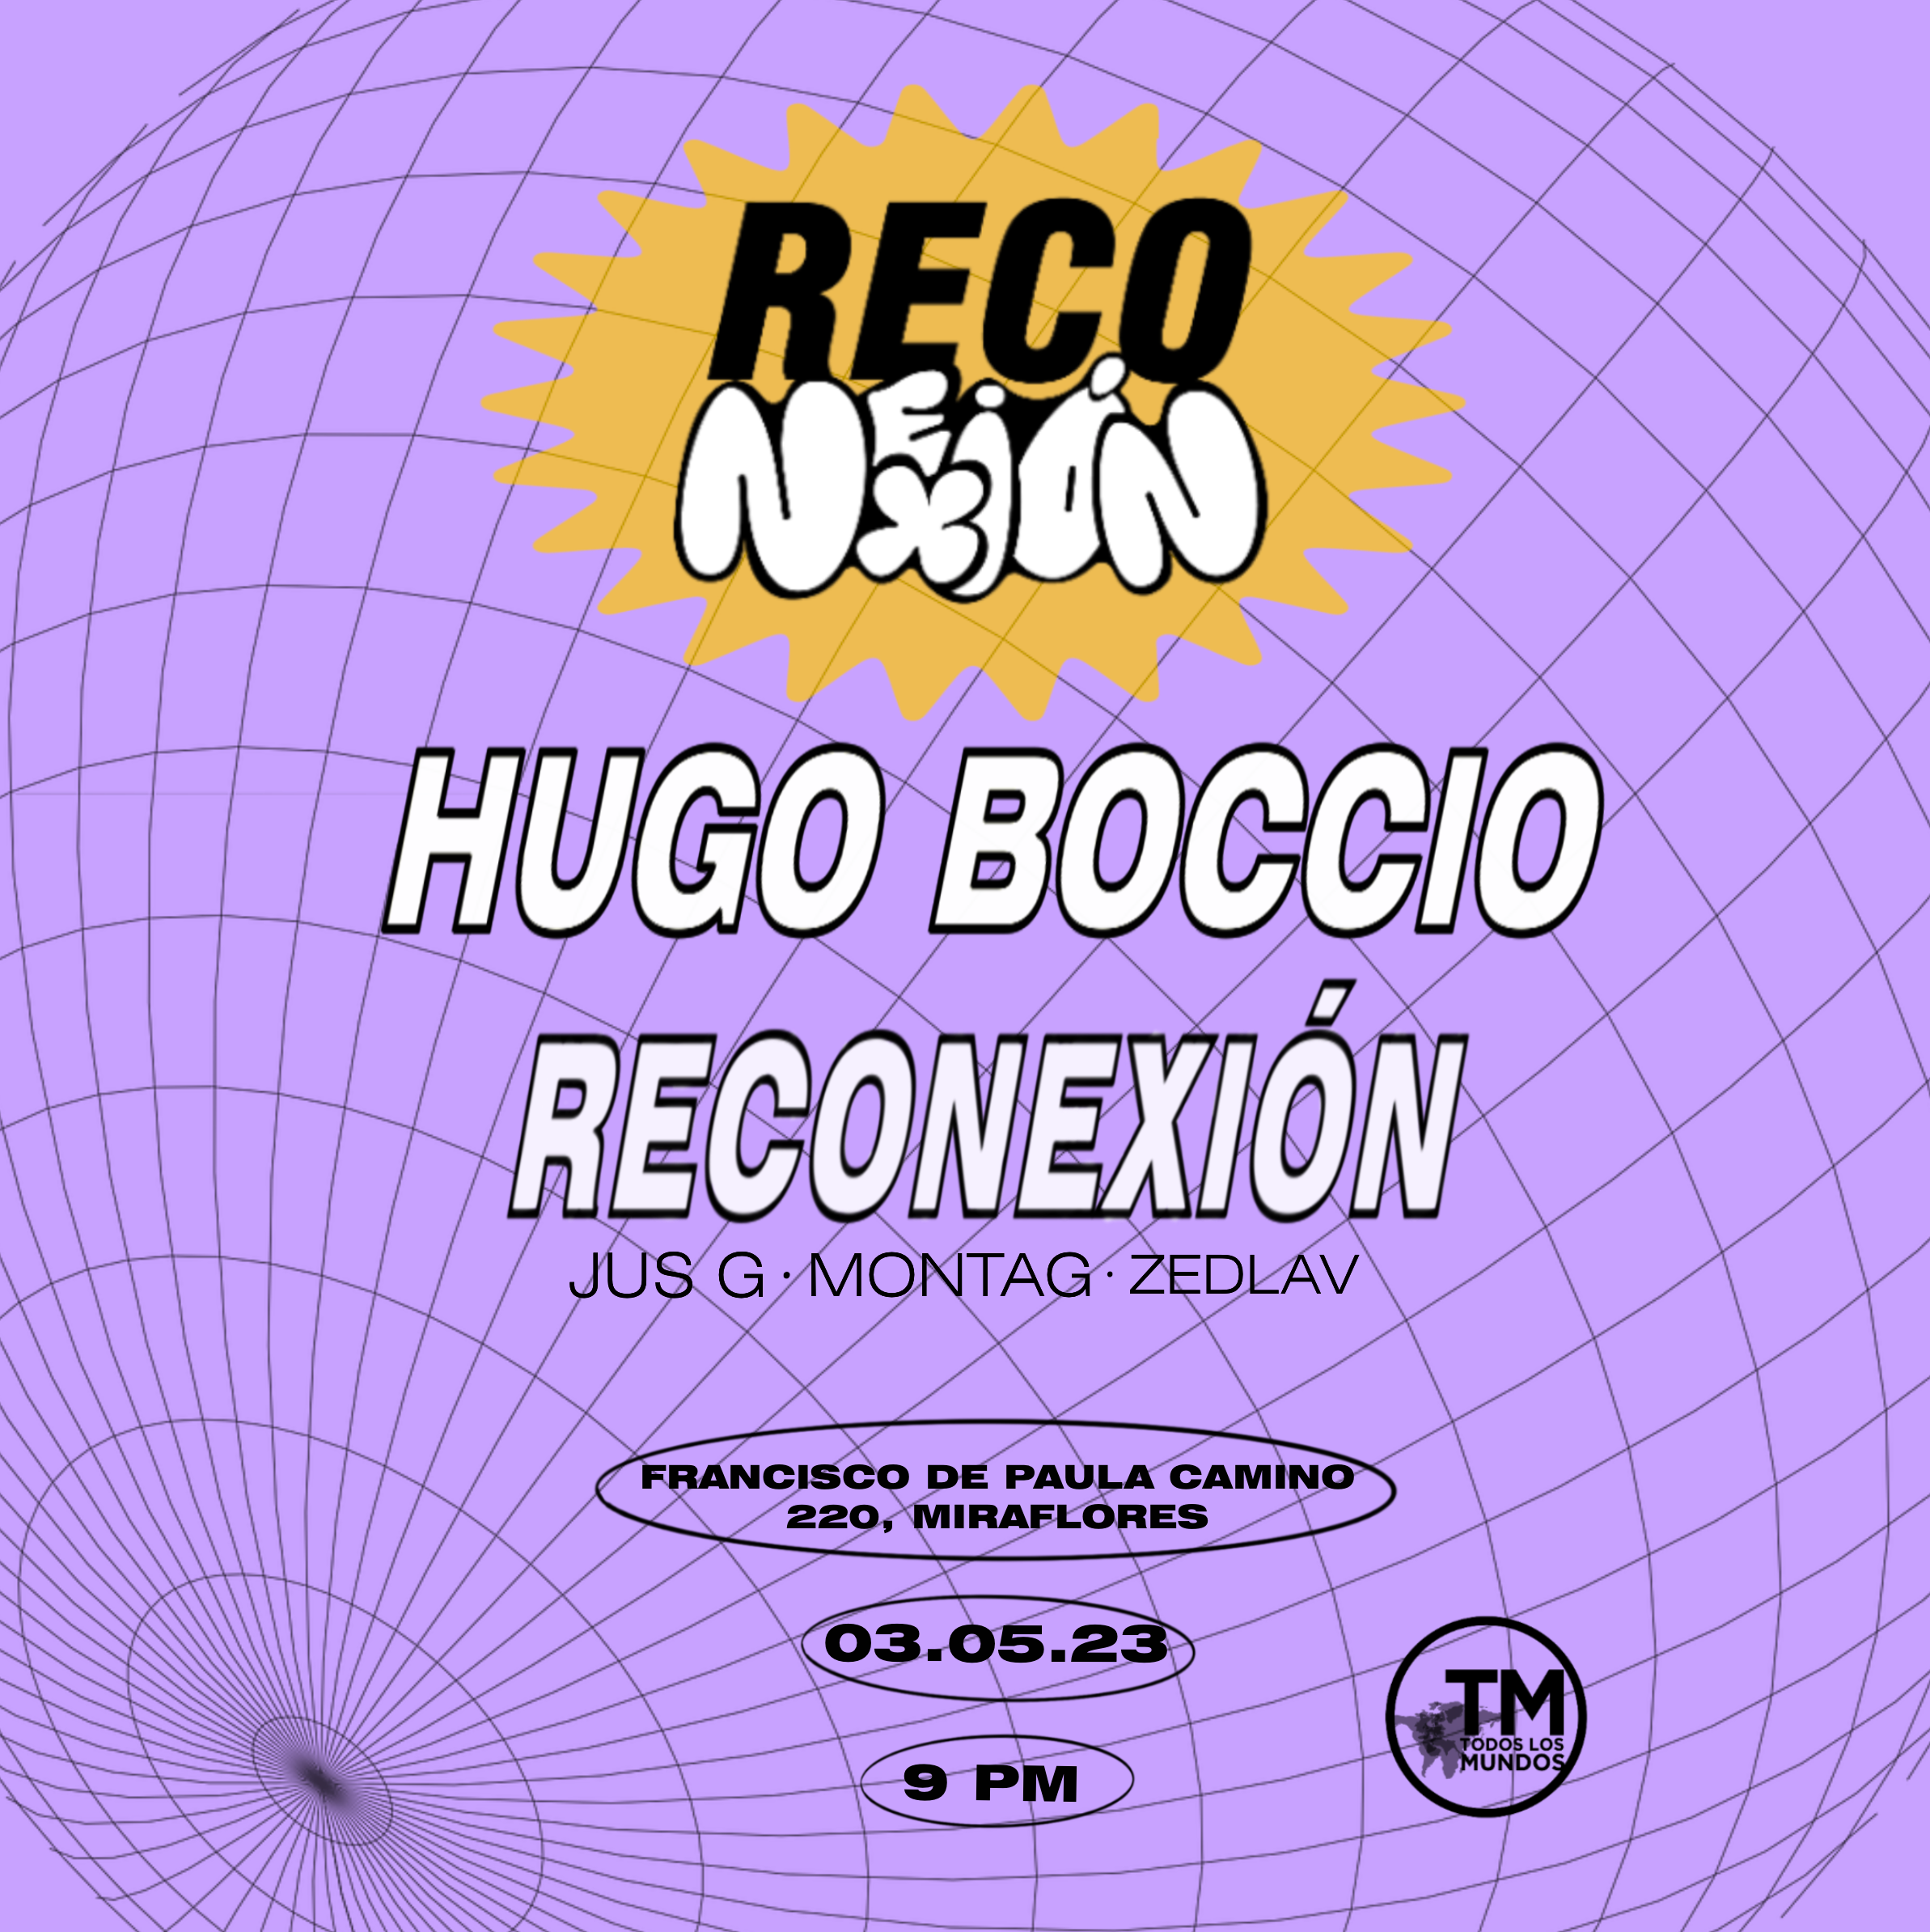 ReConexión pres. Hugo Boccio - フライヤー表